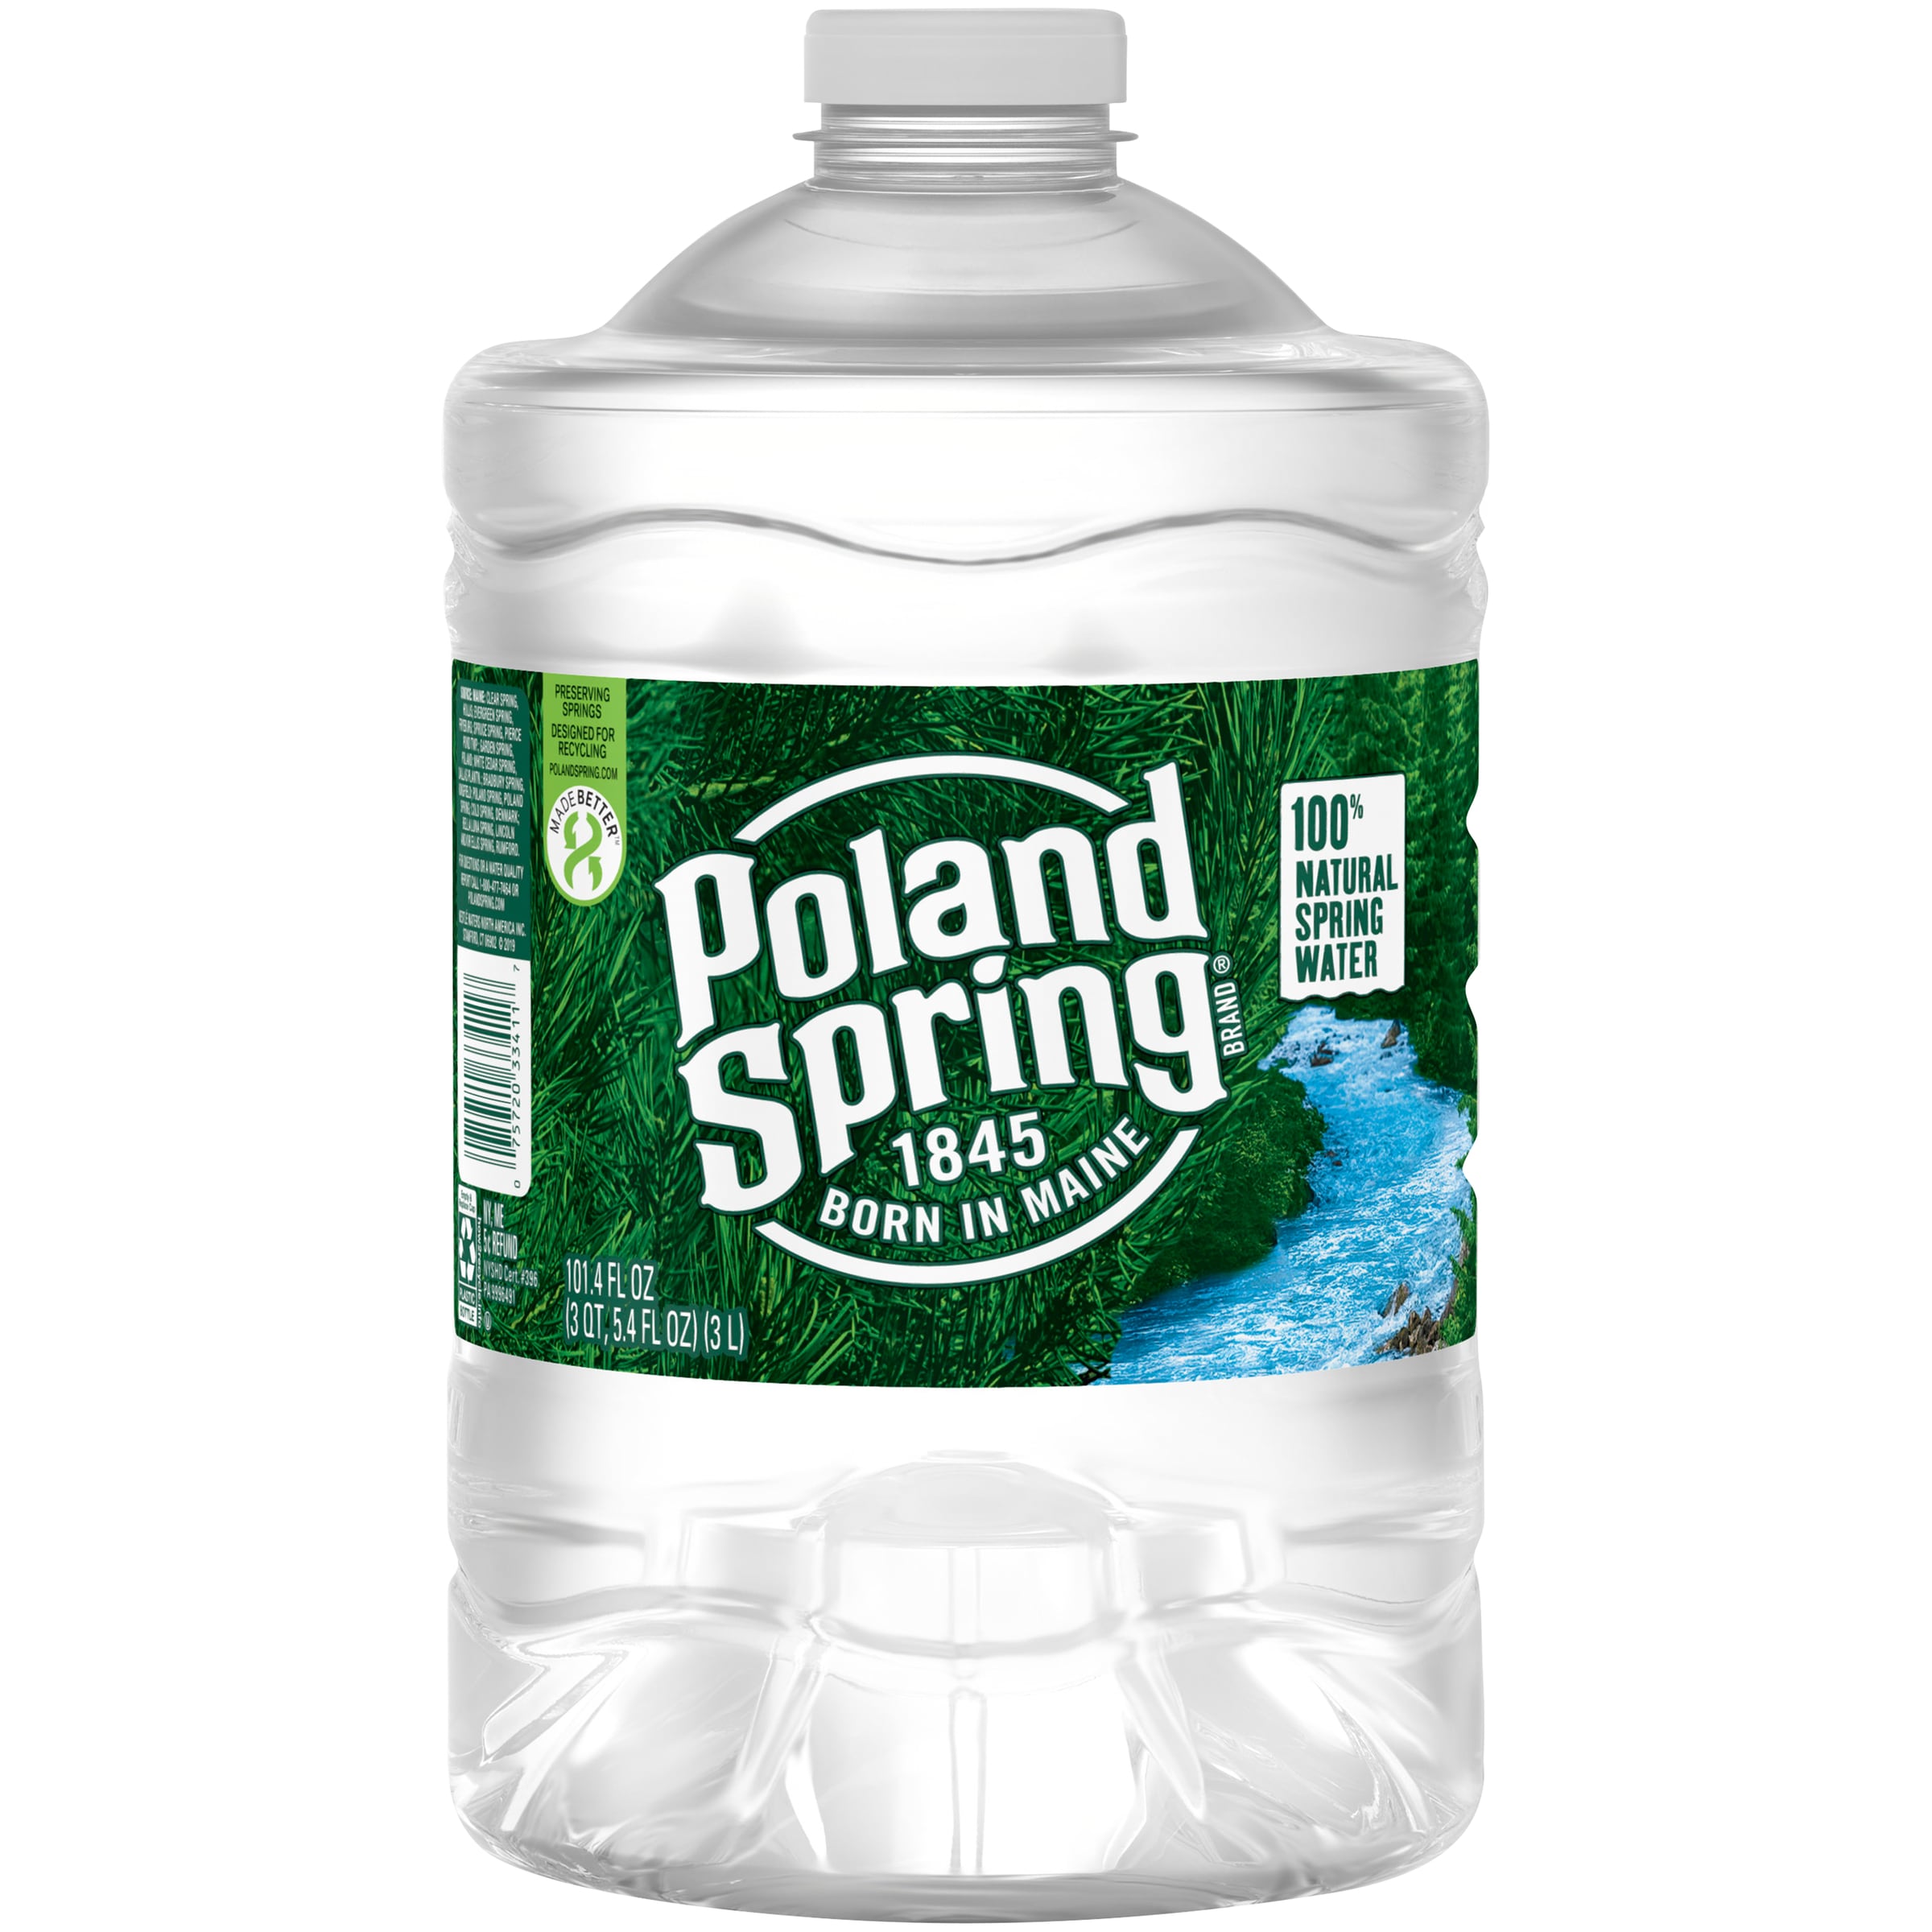 Order Poland Spring 100% Natural Spring Water, Plastic Bottles